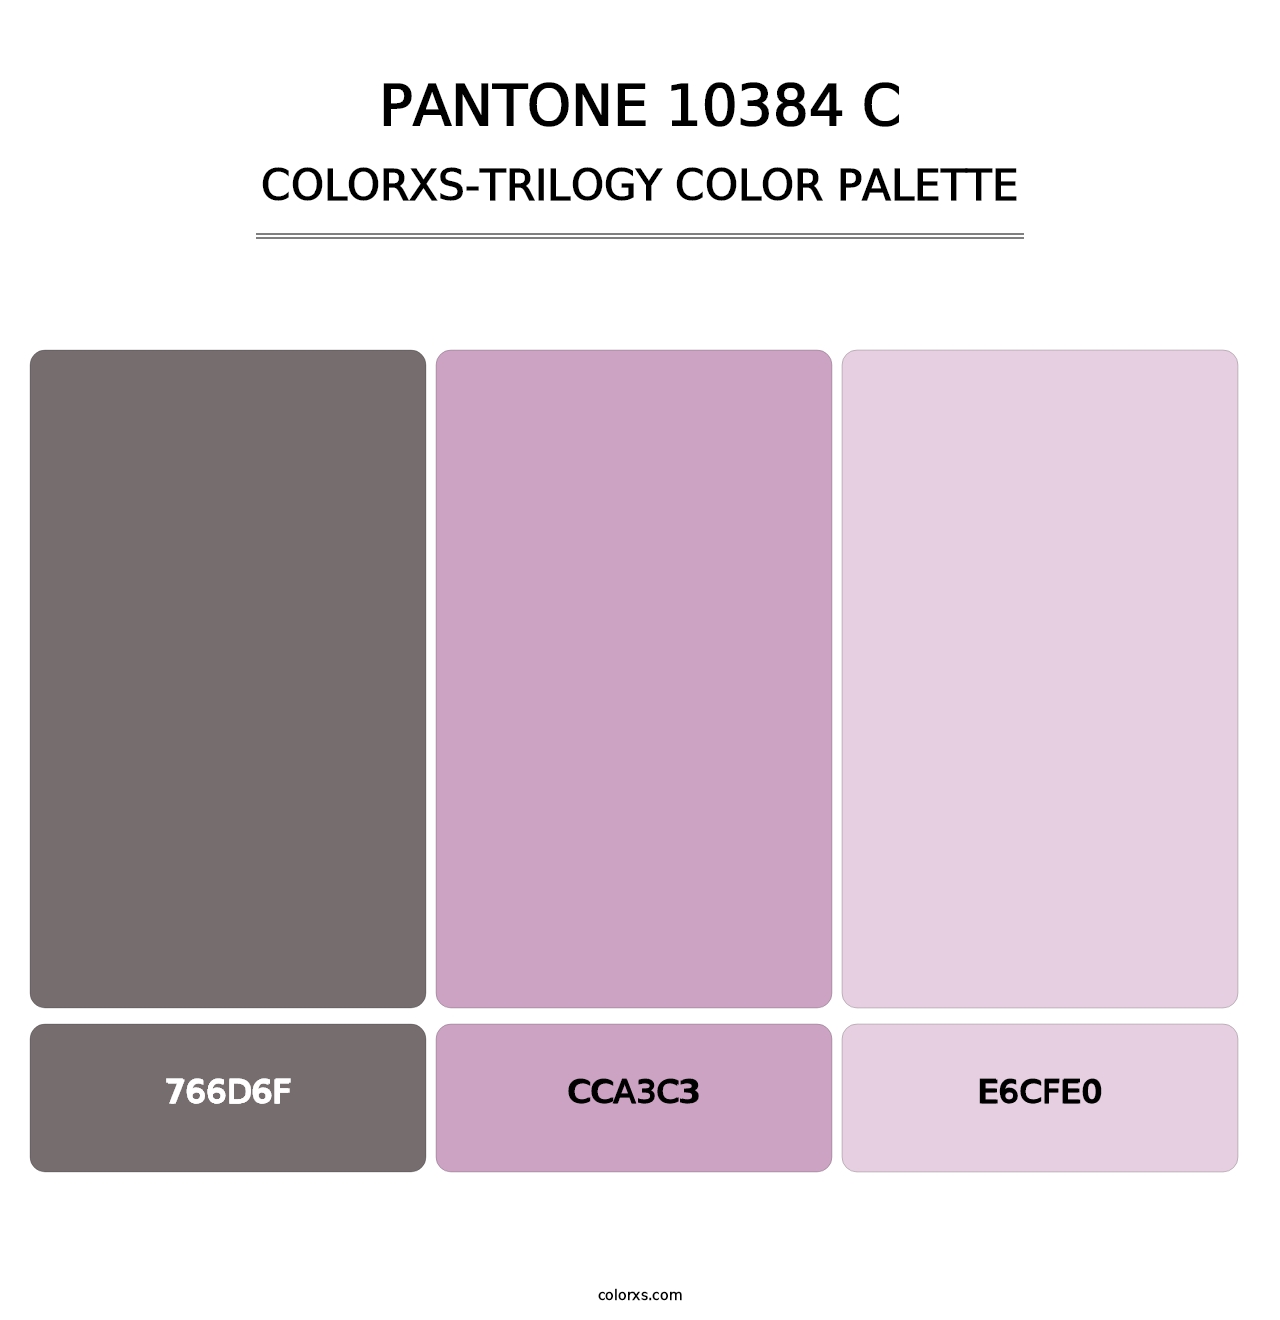 PANTONE 10384 C - Colorxs Trilogy Palette